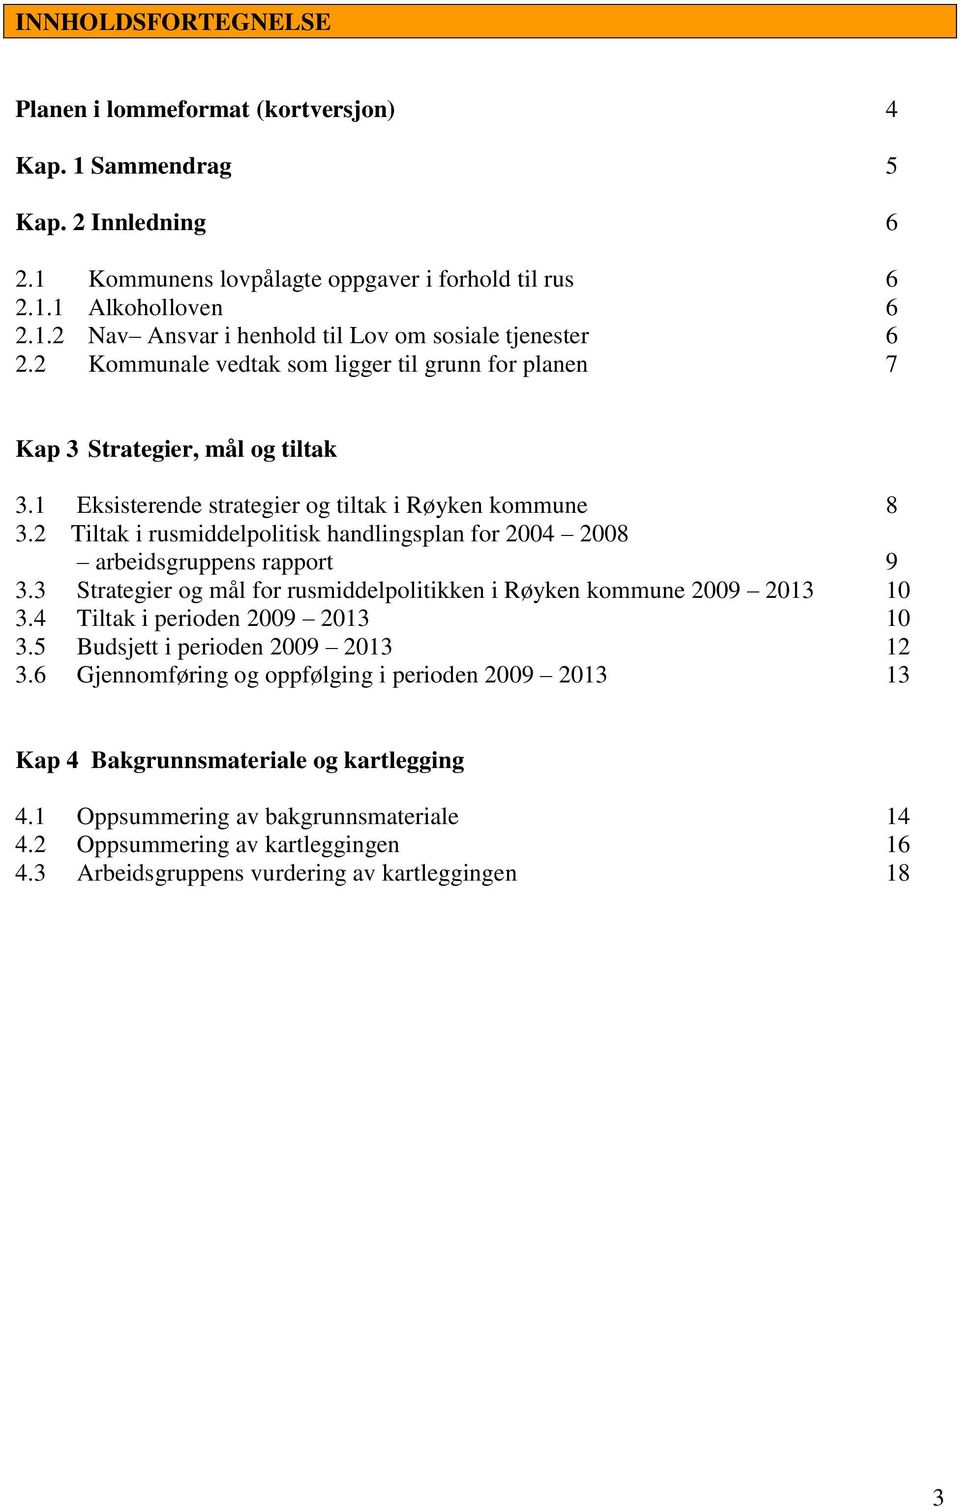 2 Tiltak i rusmiddelpolitisk handlingsplan for 2004 2008 arbeidsgruppens rapport 9 3.3 Strategier og mål for rusmiddelpolitikken i Røyken kommune 2009 2013 10 3.4 Tiltak i perioden 2009 2013 10 3.